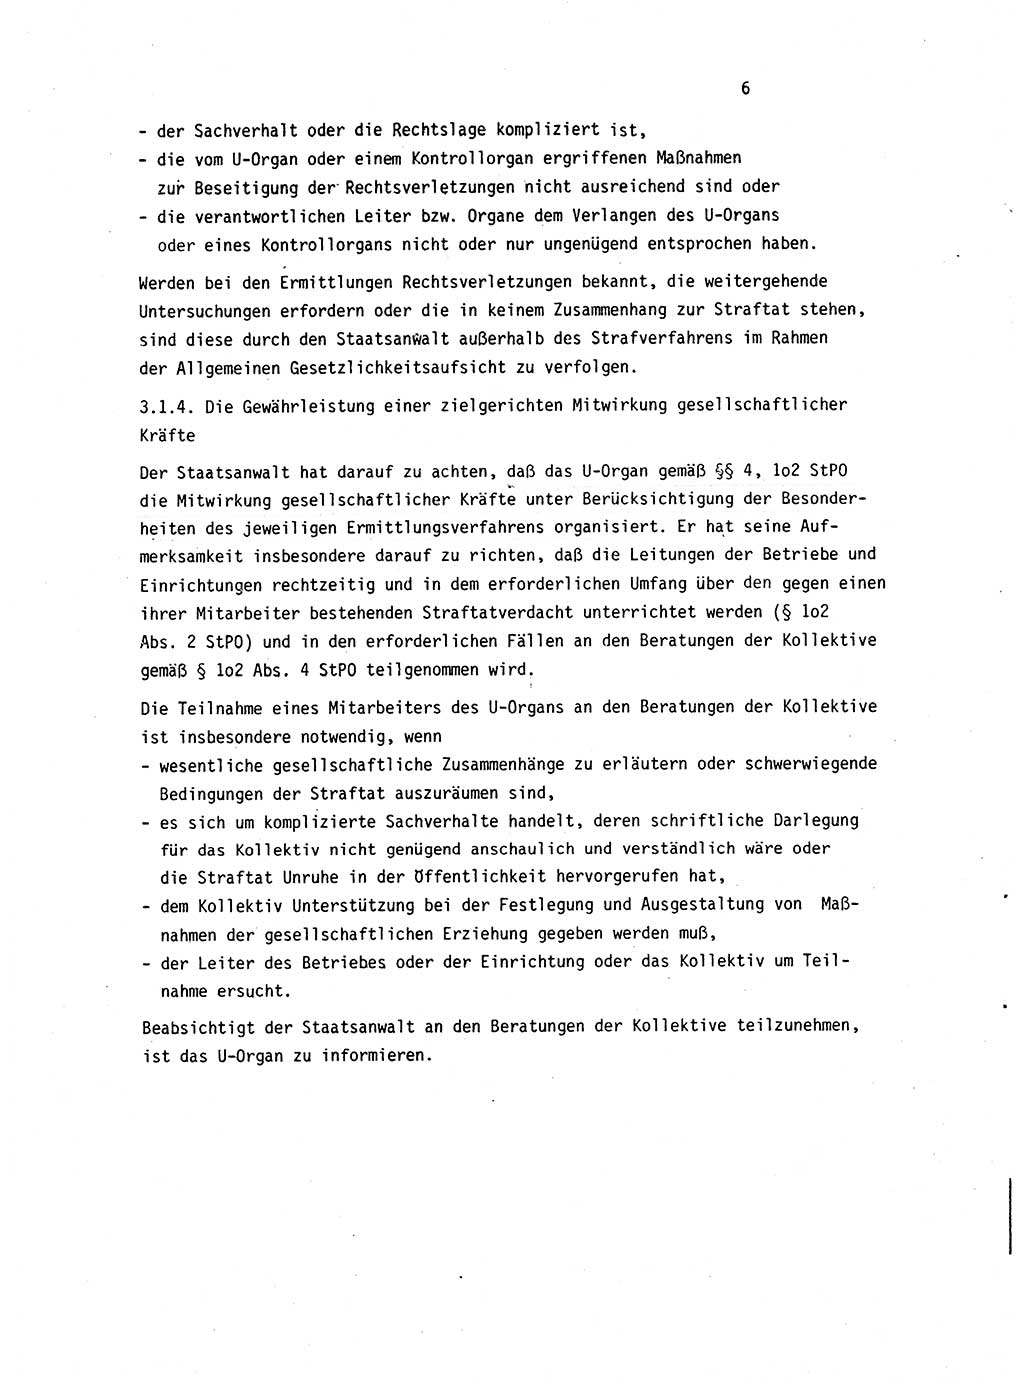 Leitung des Ermittlungsverfahren (EV) durch den Staatsanwalt [Deutsche Demokratische Republik (DDR)] 1985, Seite 6 (Ltg. EV StA DDR 1985, S. 6)